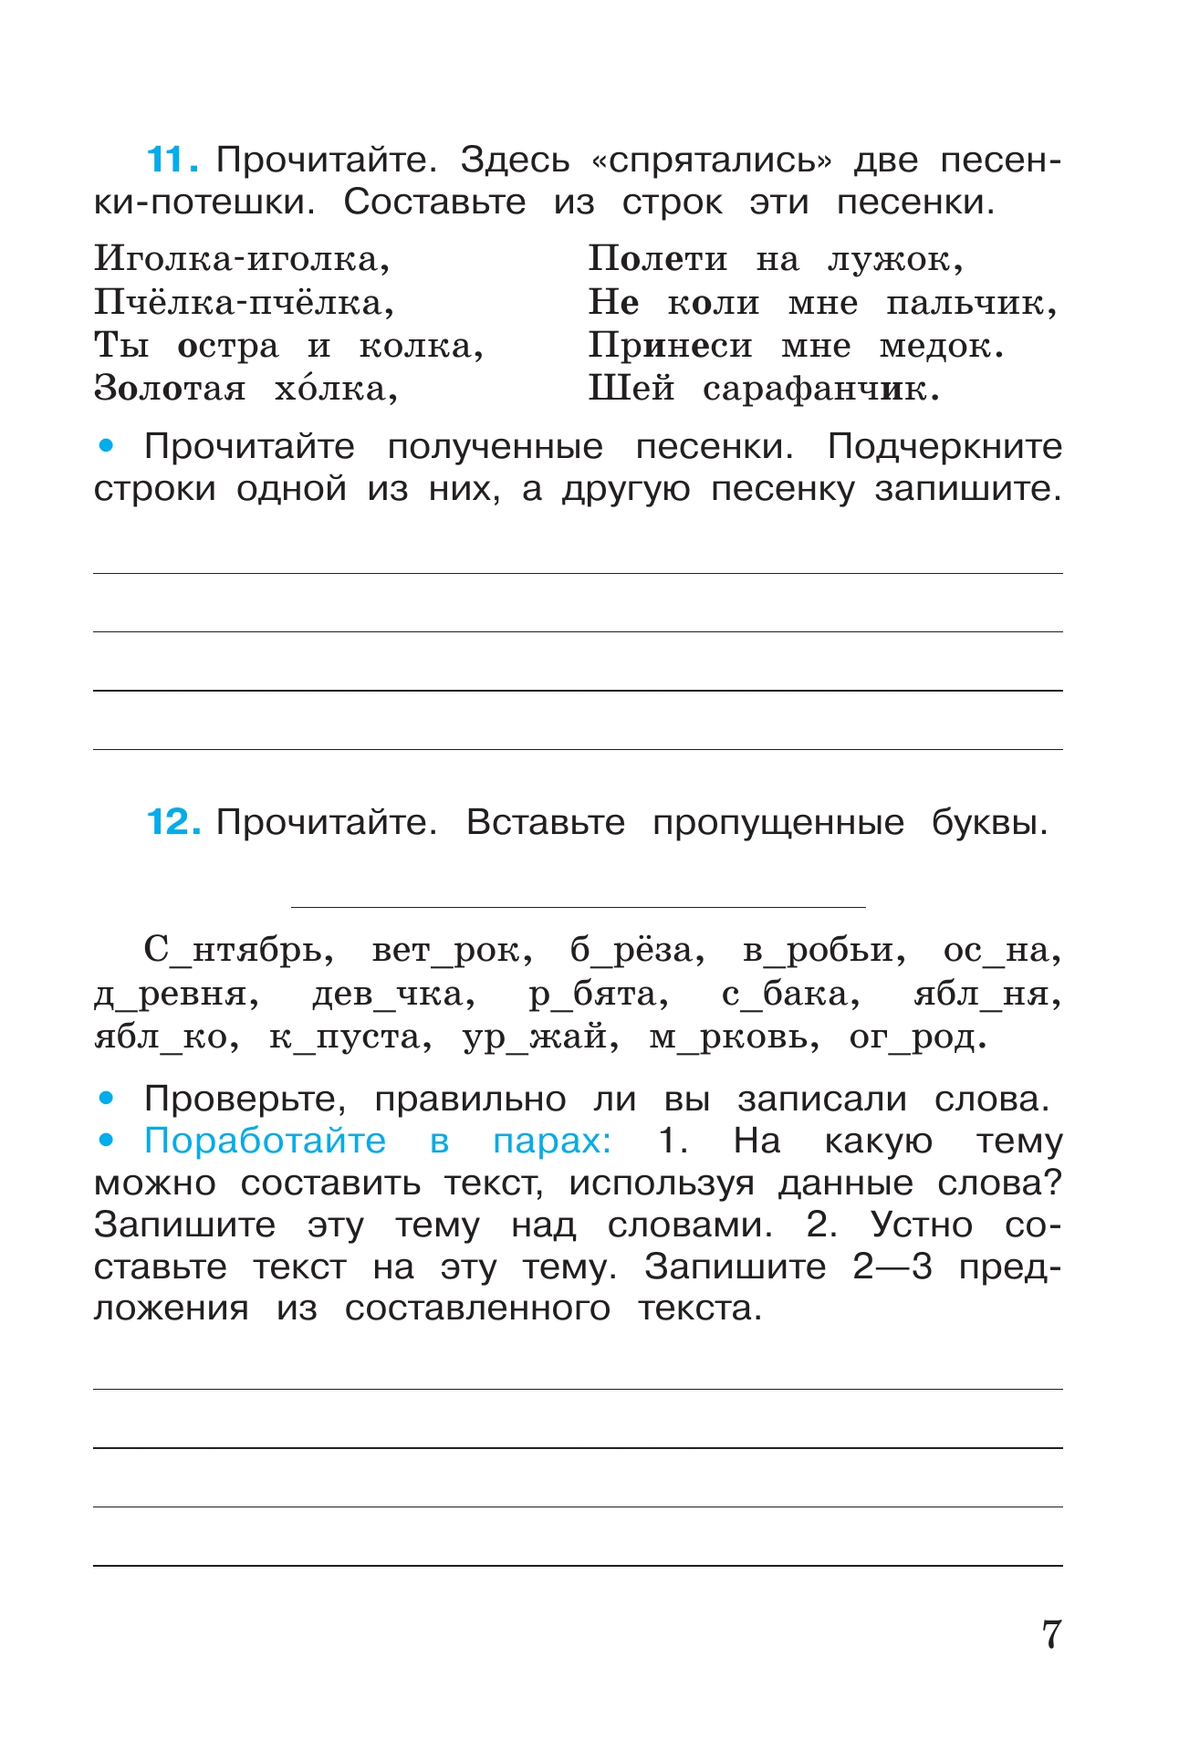 Русский язык. Рабочая тетрадь. 3 класс. В 2 частях. Часть 1 9